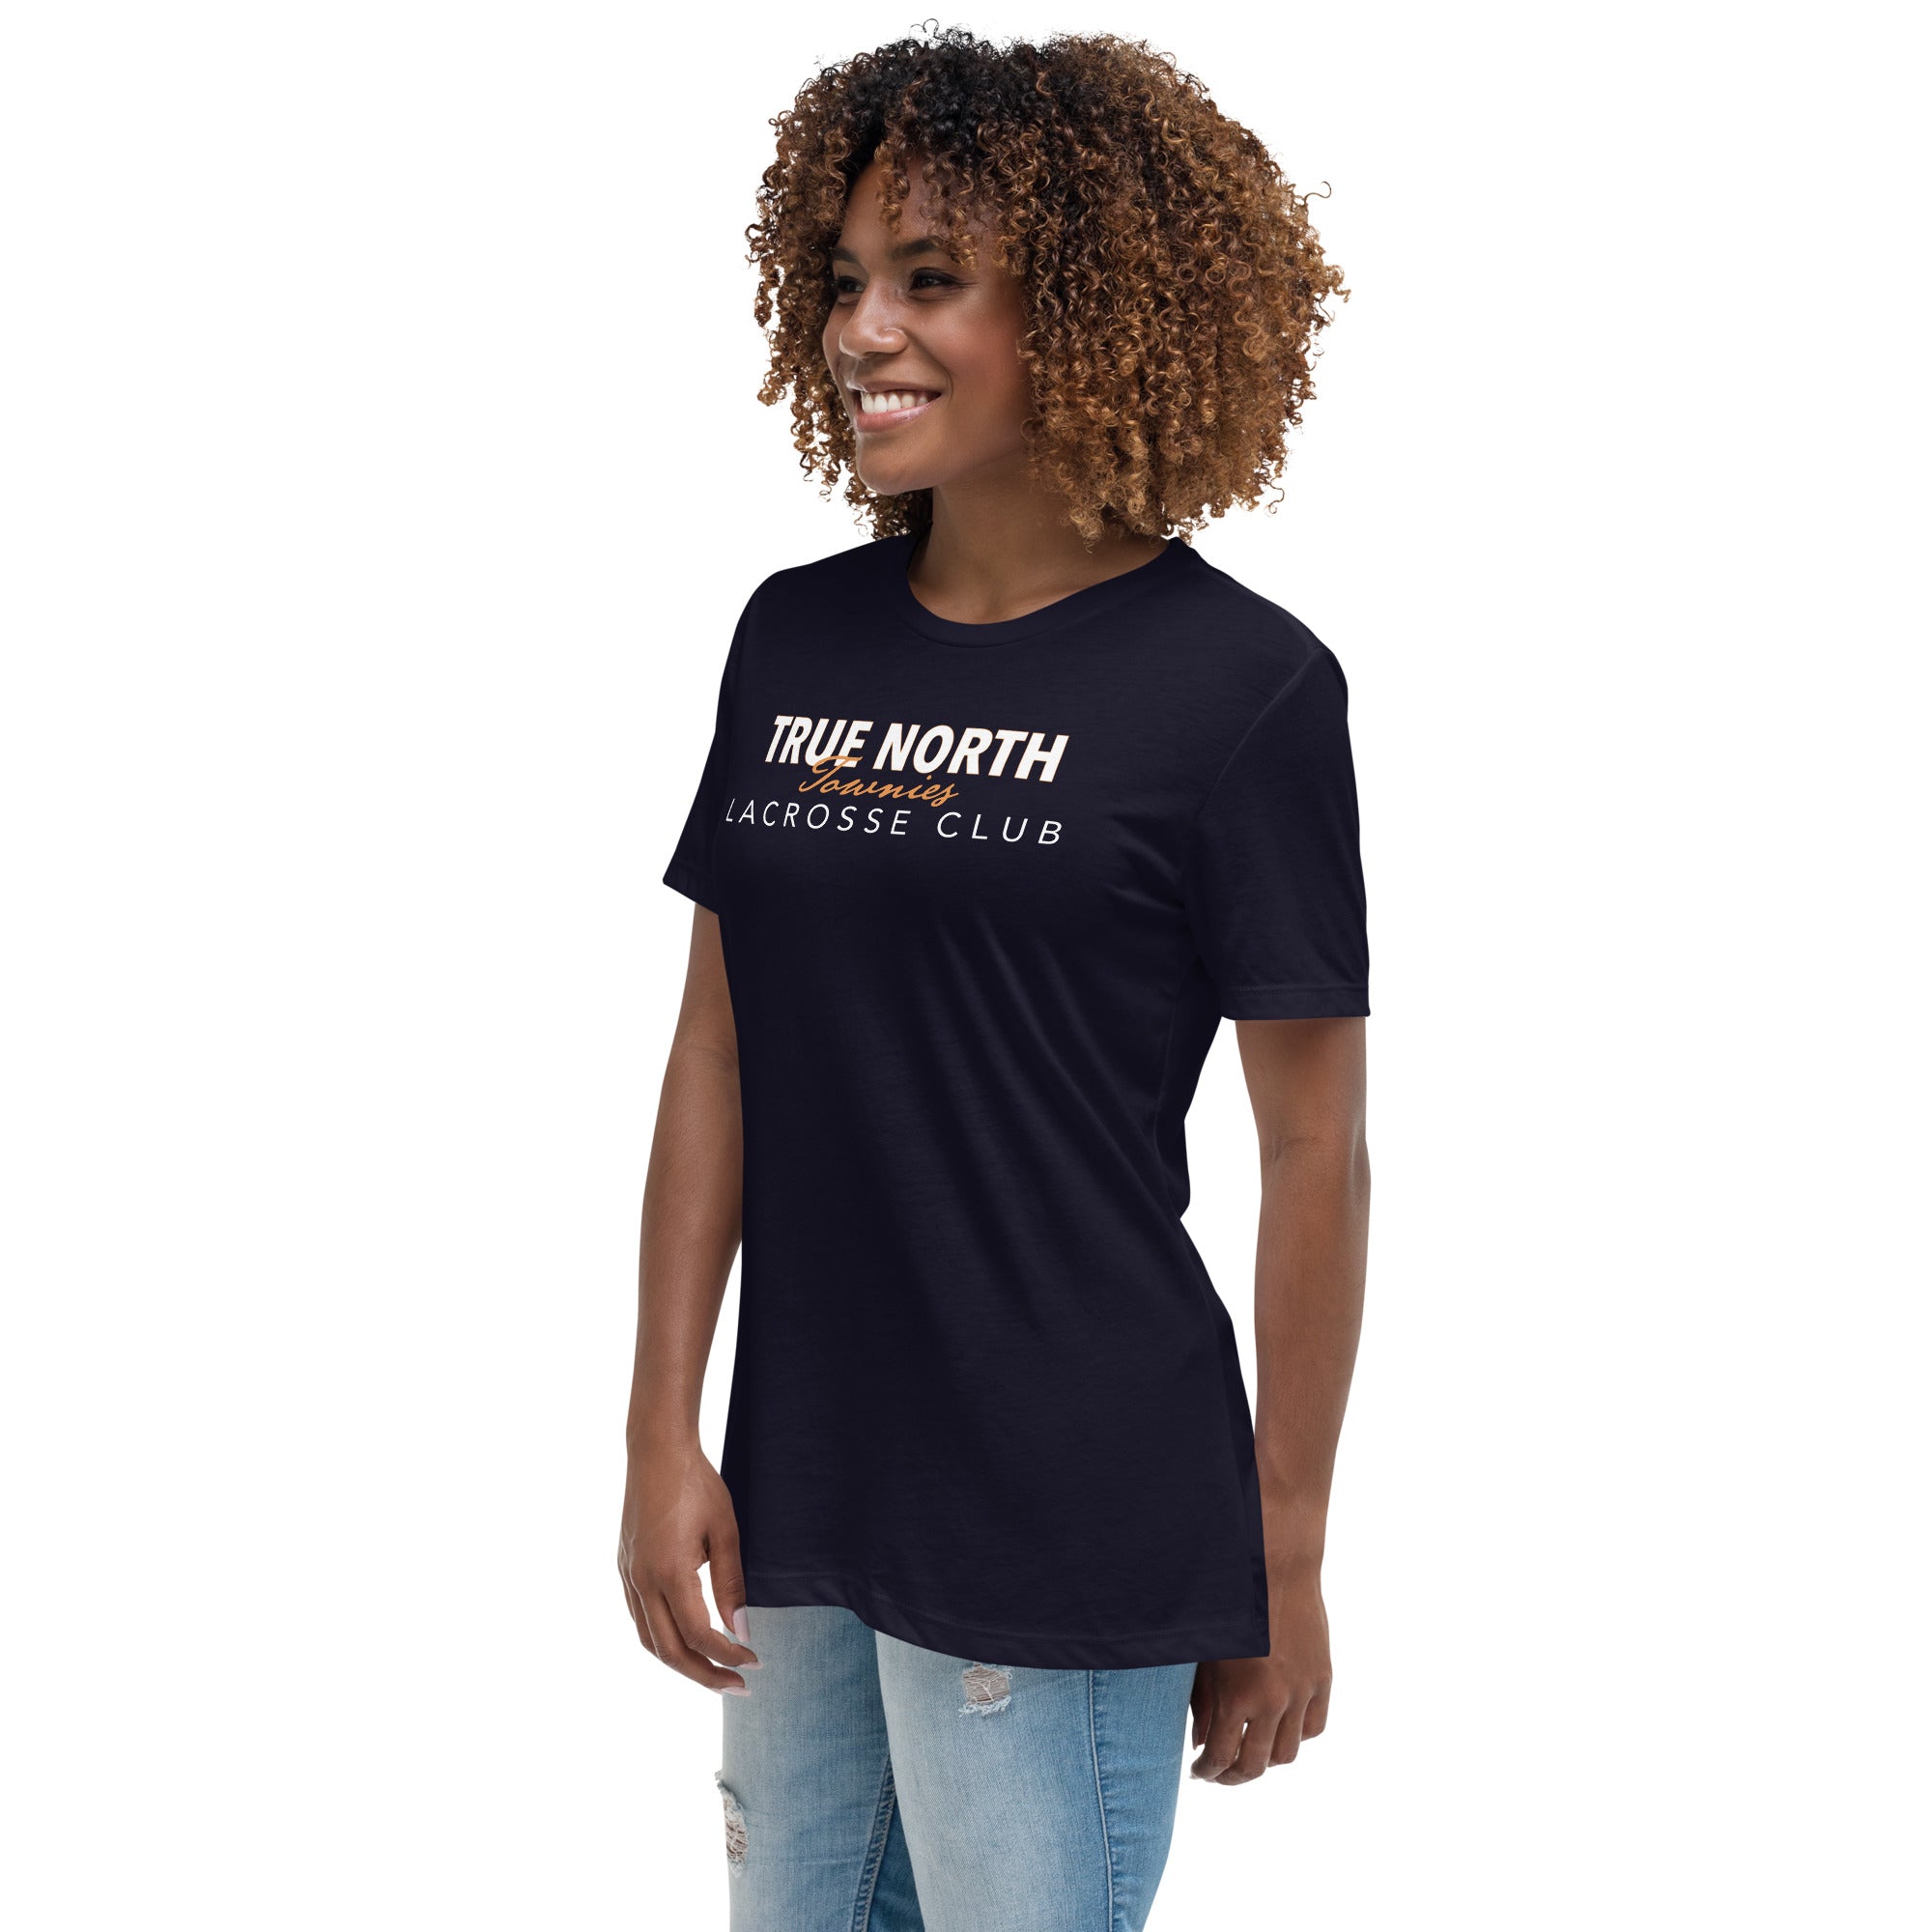 Townies Women's Relaxed T-Shirt